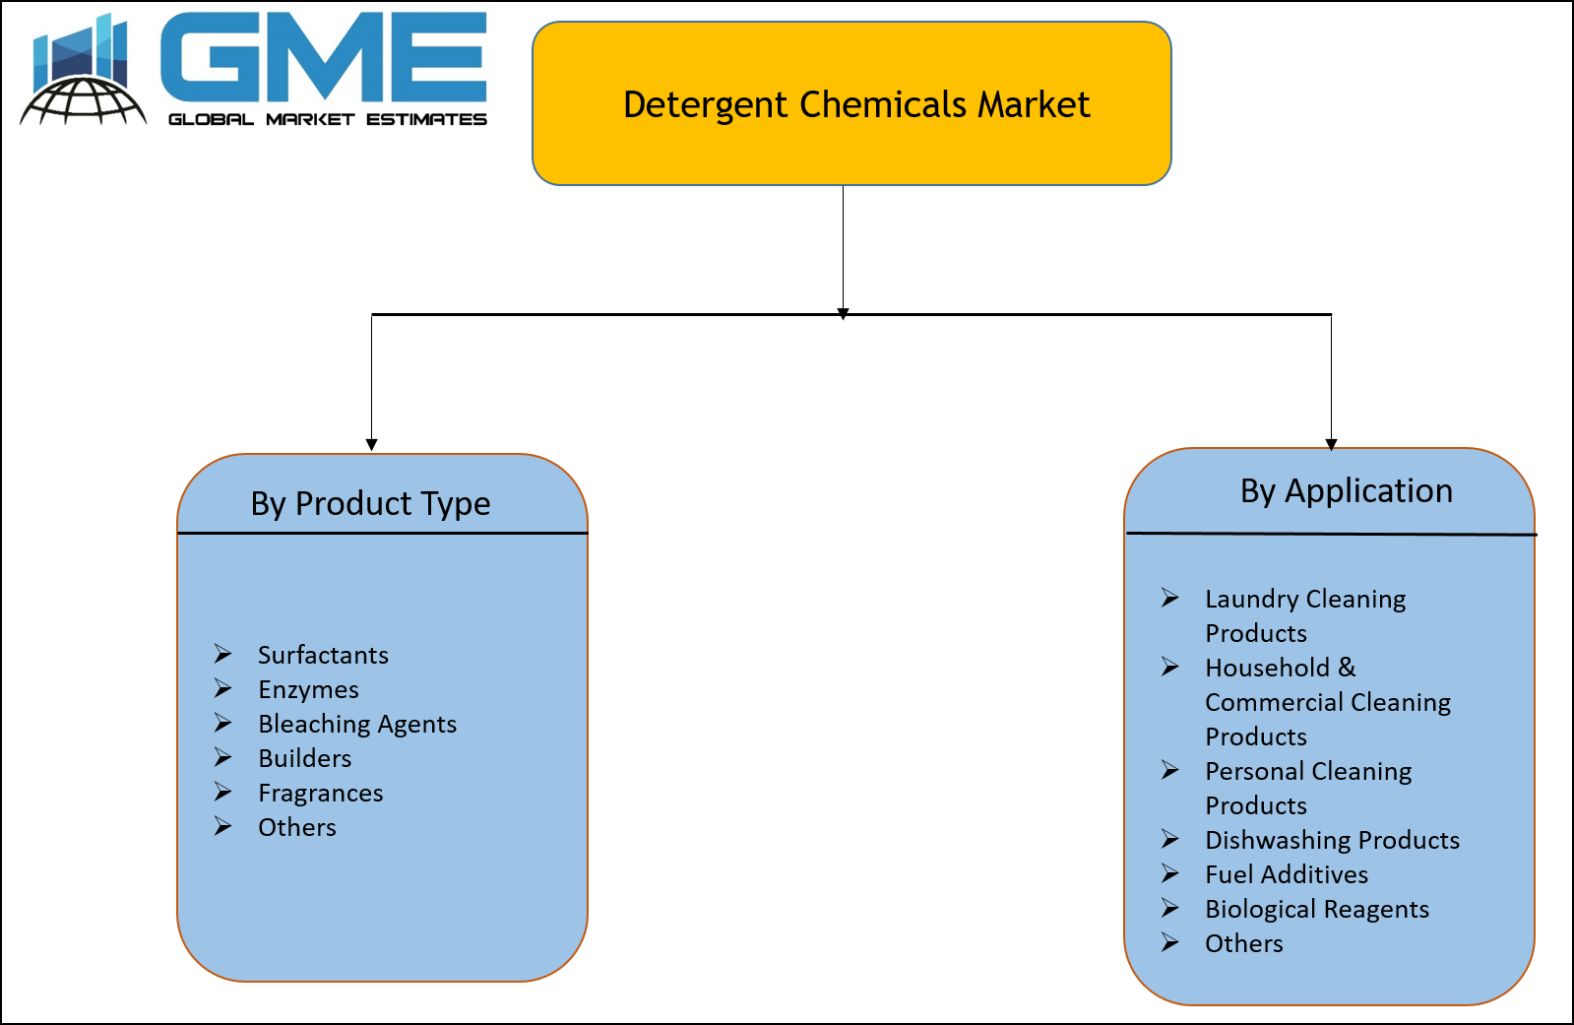 Detergent Chemicals Market Segmentation